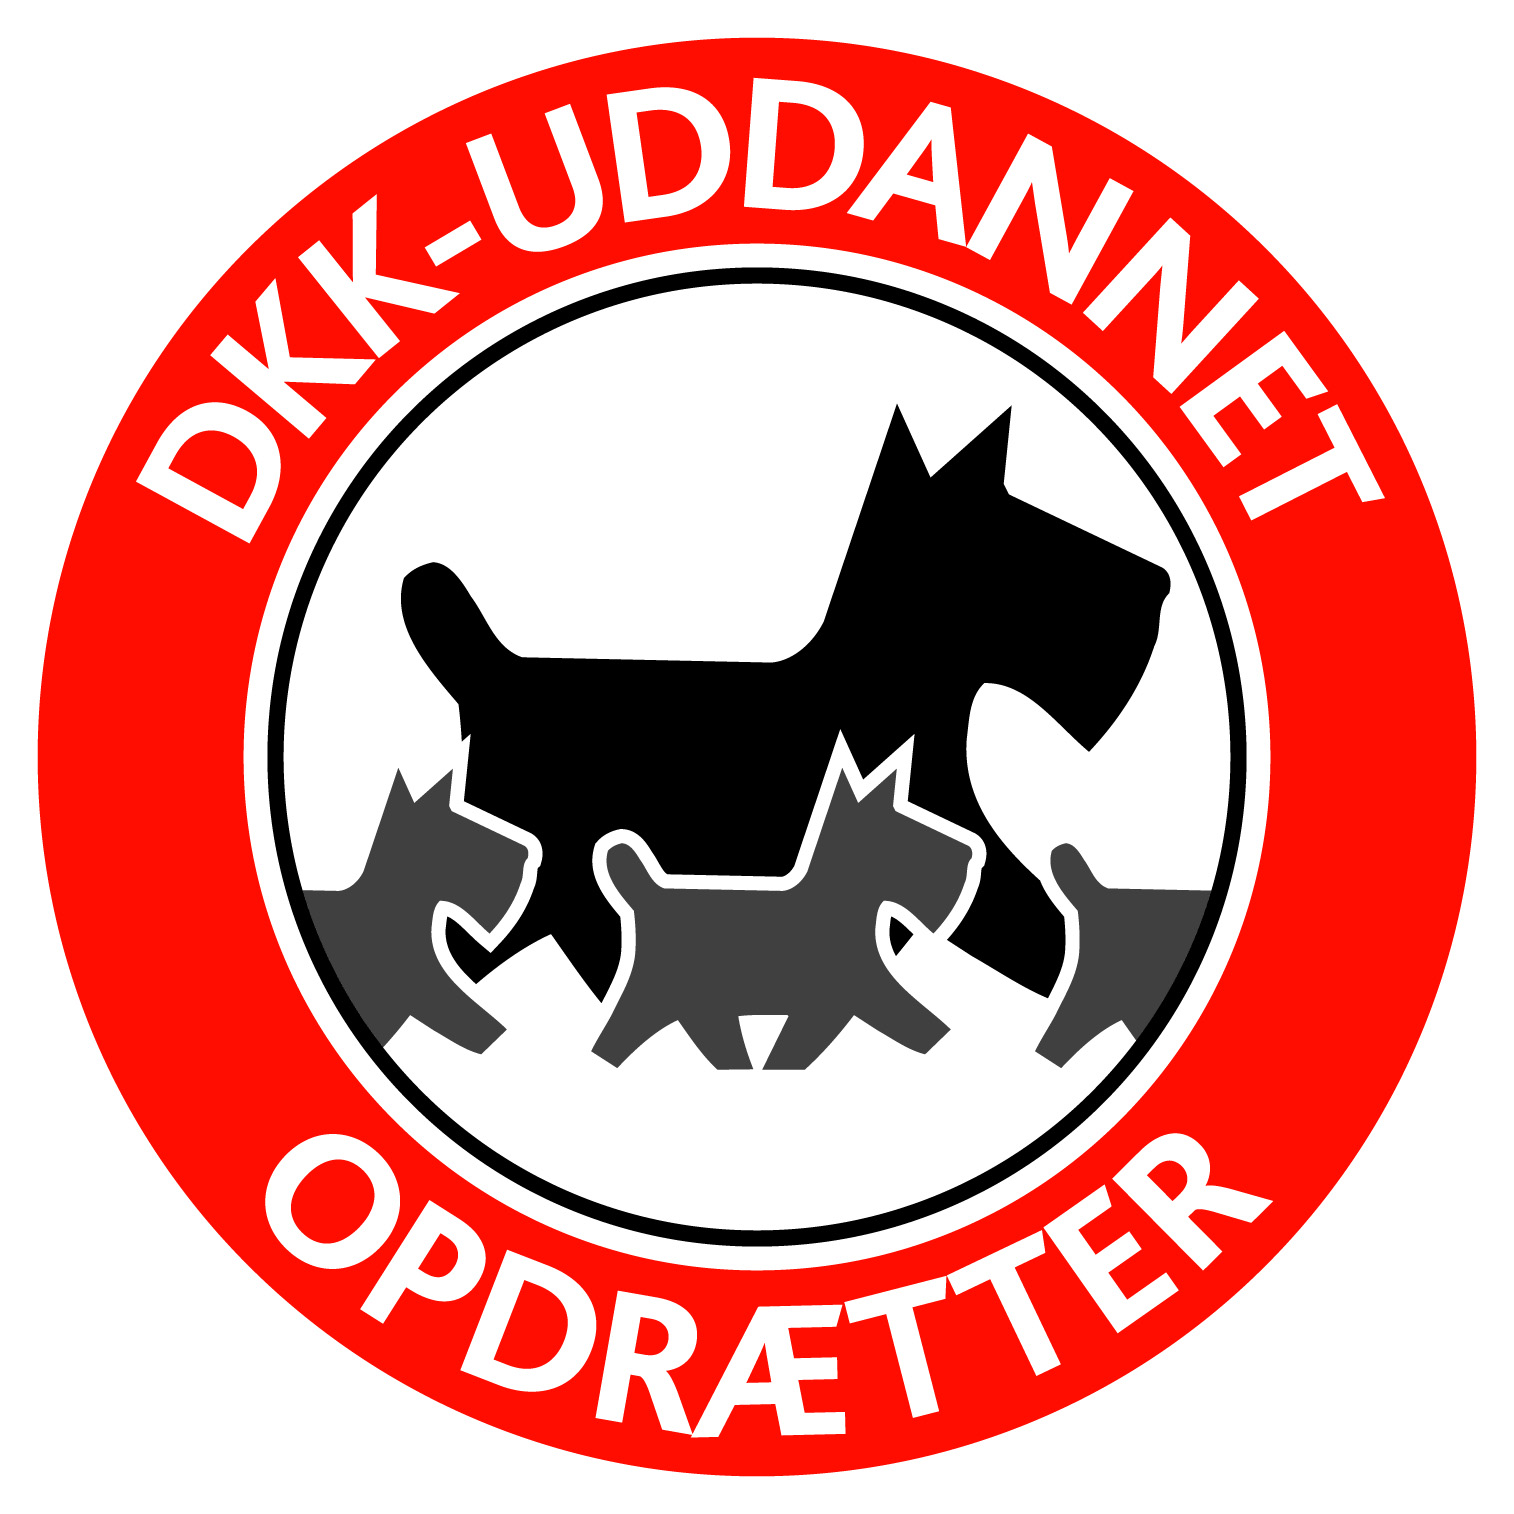 DKK-uddannet-opdrætter-logo